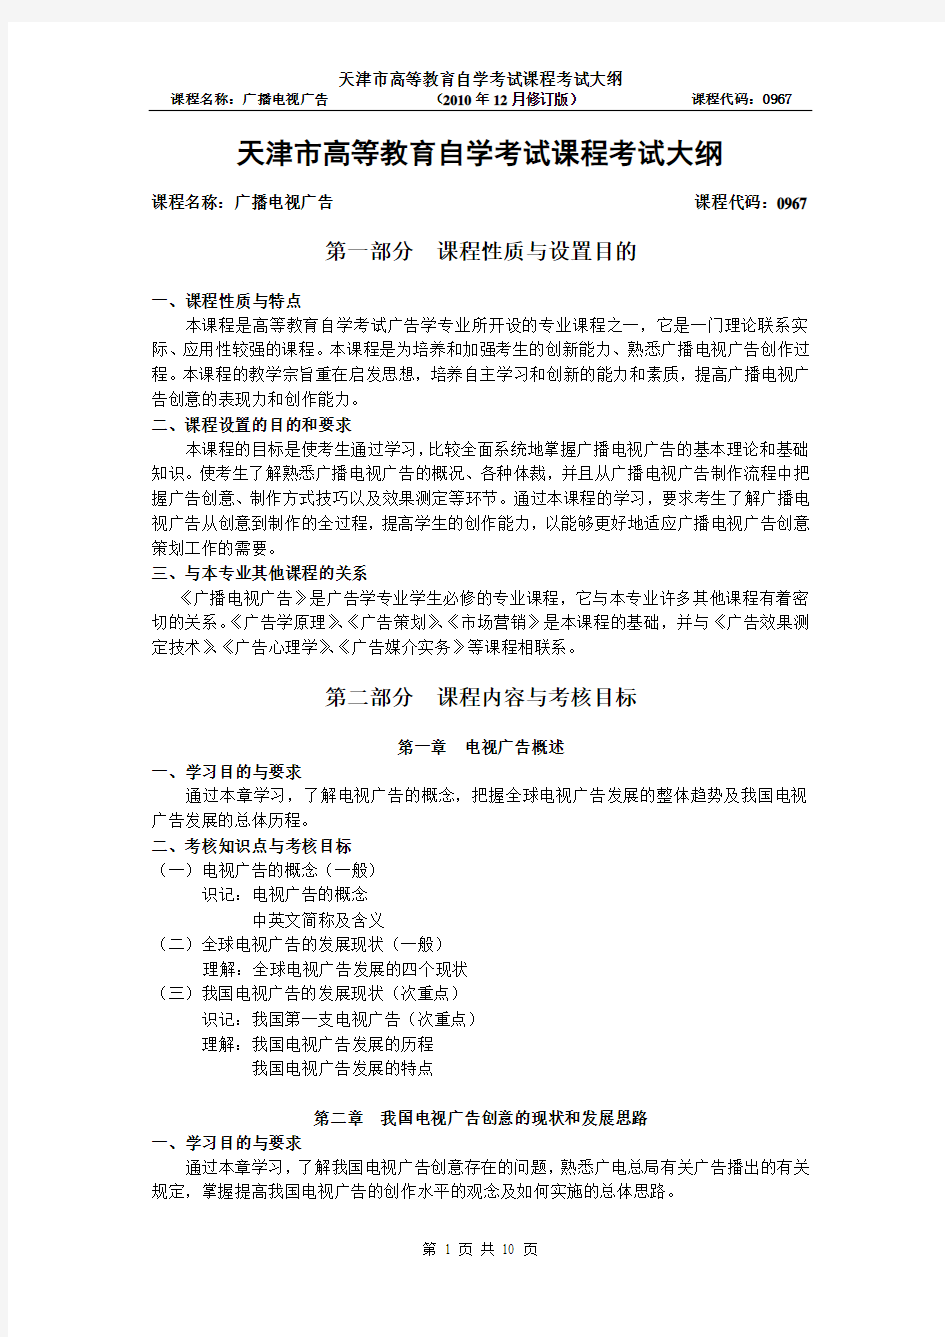 天津2012年自考“广播电视广告”课程考试大纲